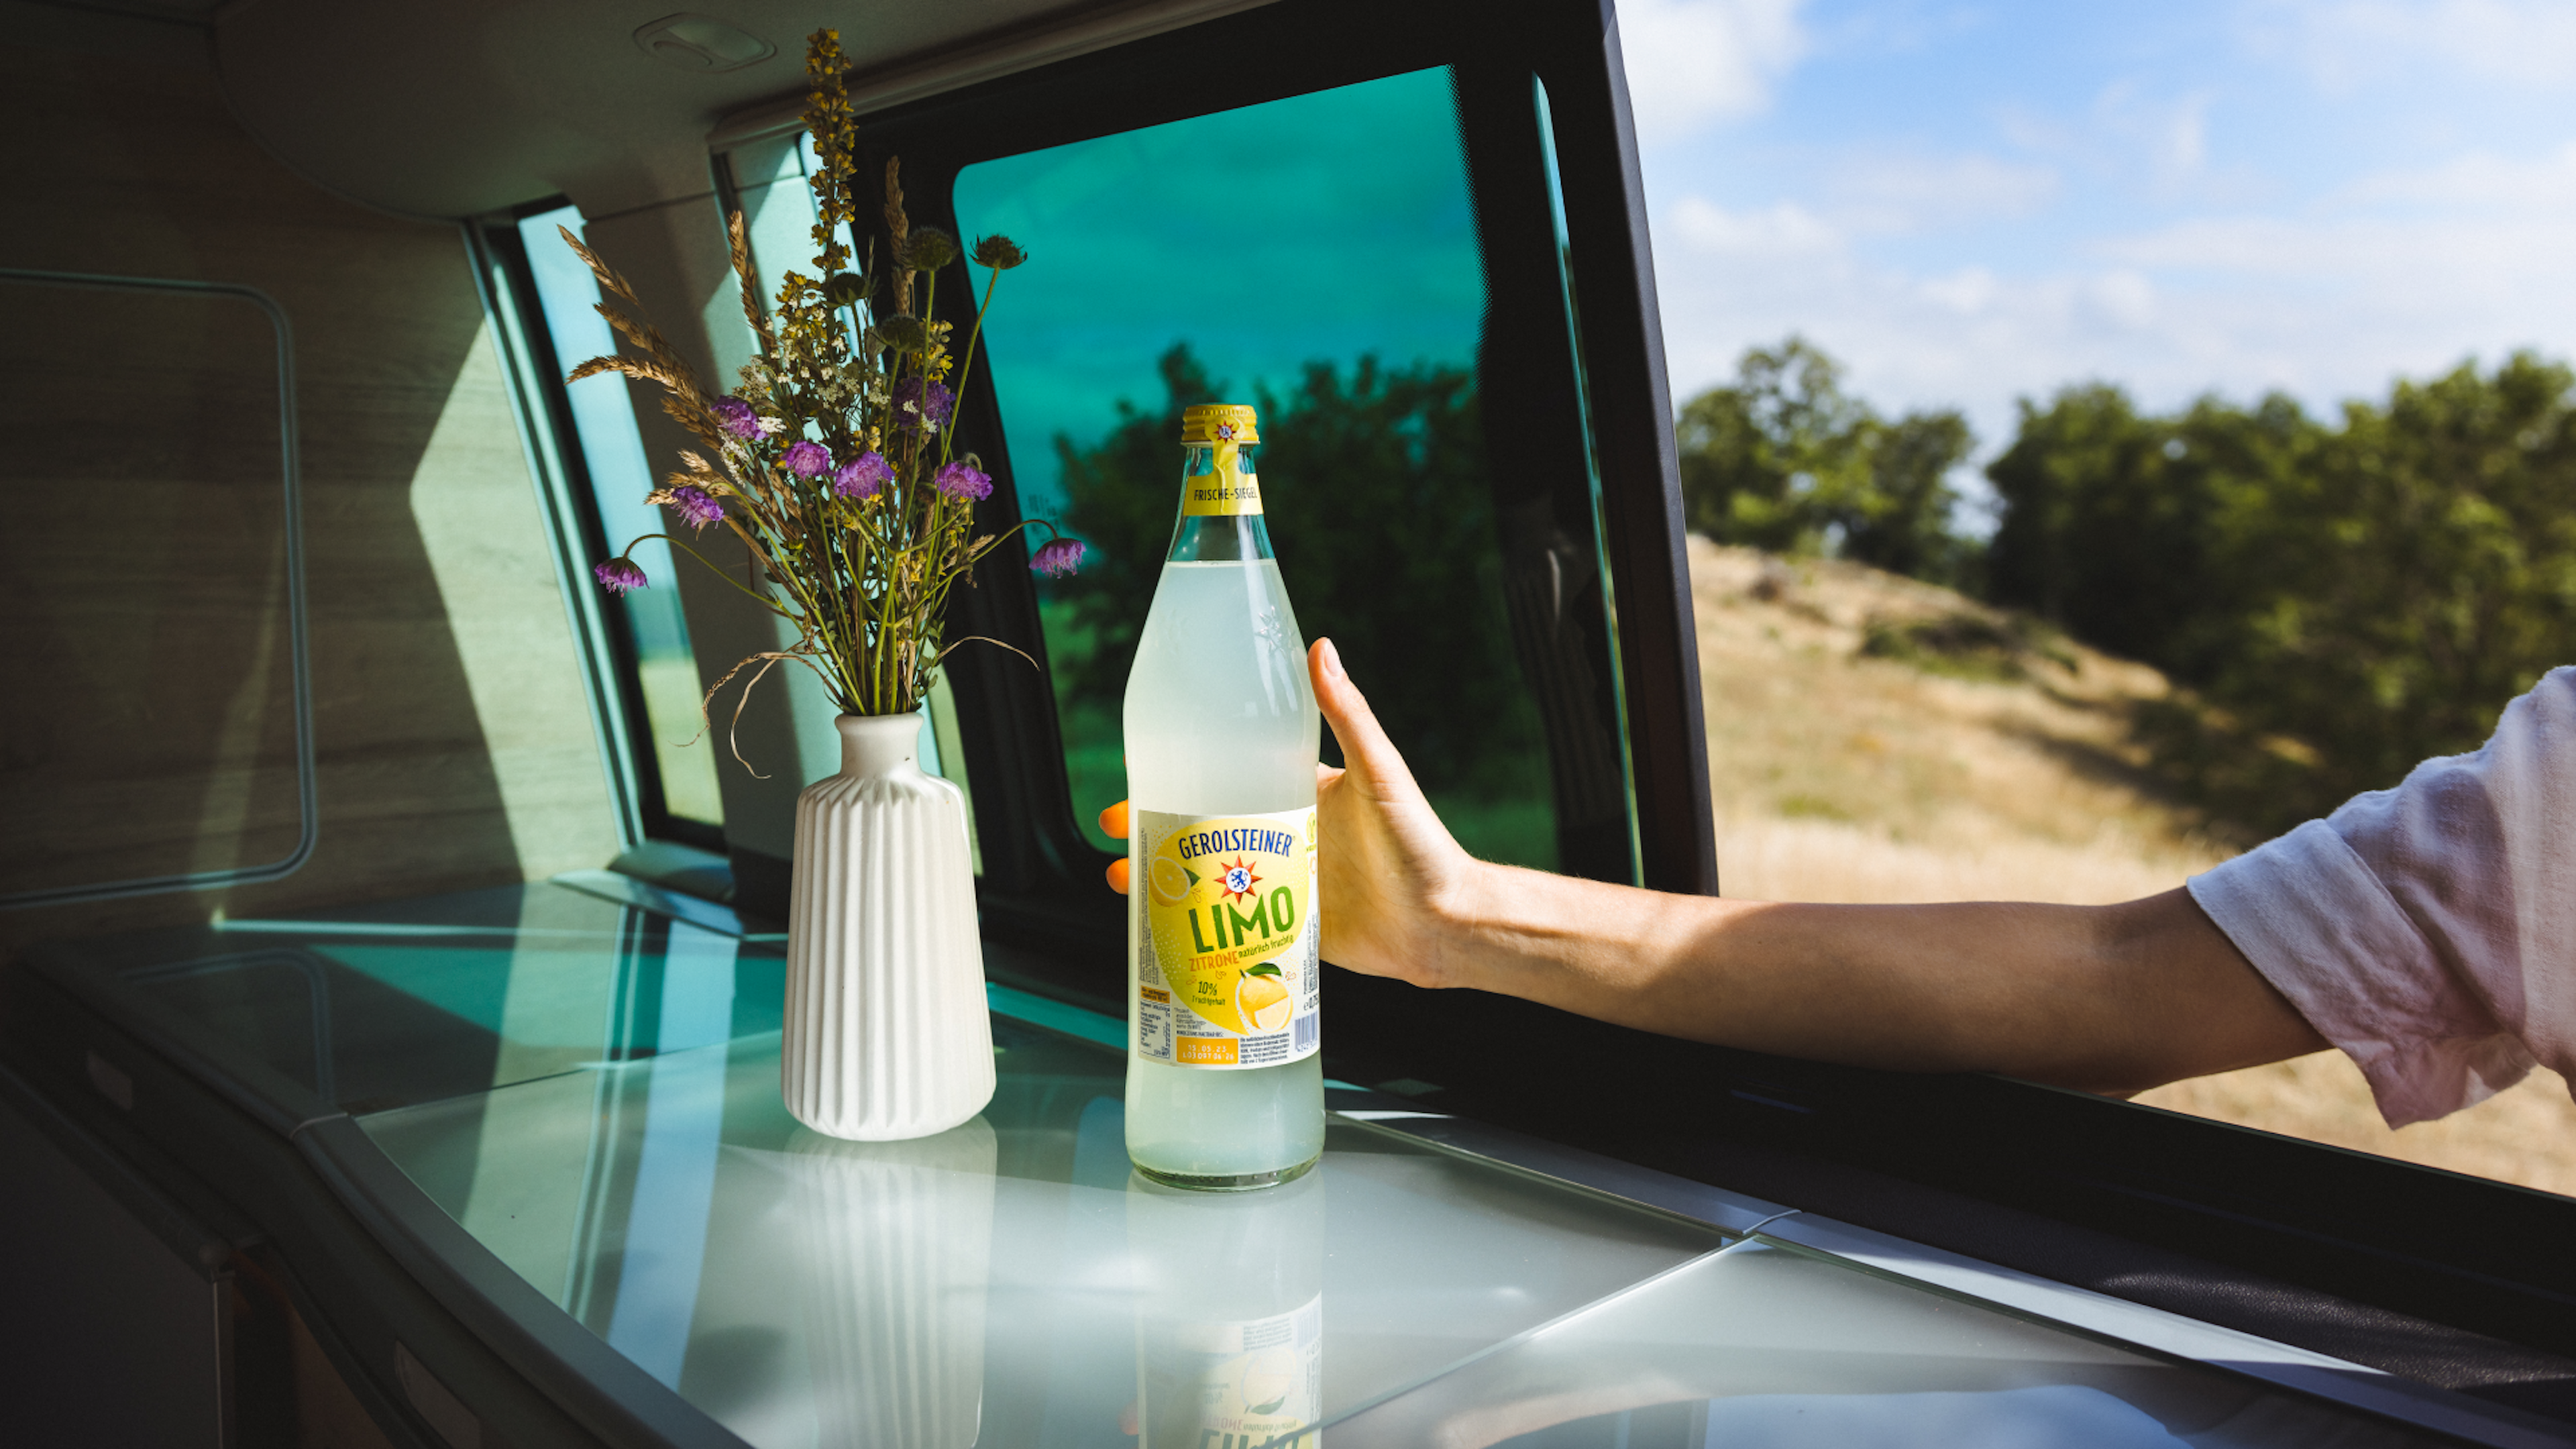 Eine Flasche Zitronenlimonade steht vor einer geöffneten Wagentür neben einer Vase mit Wildblumen.